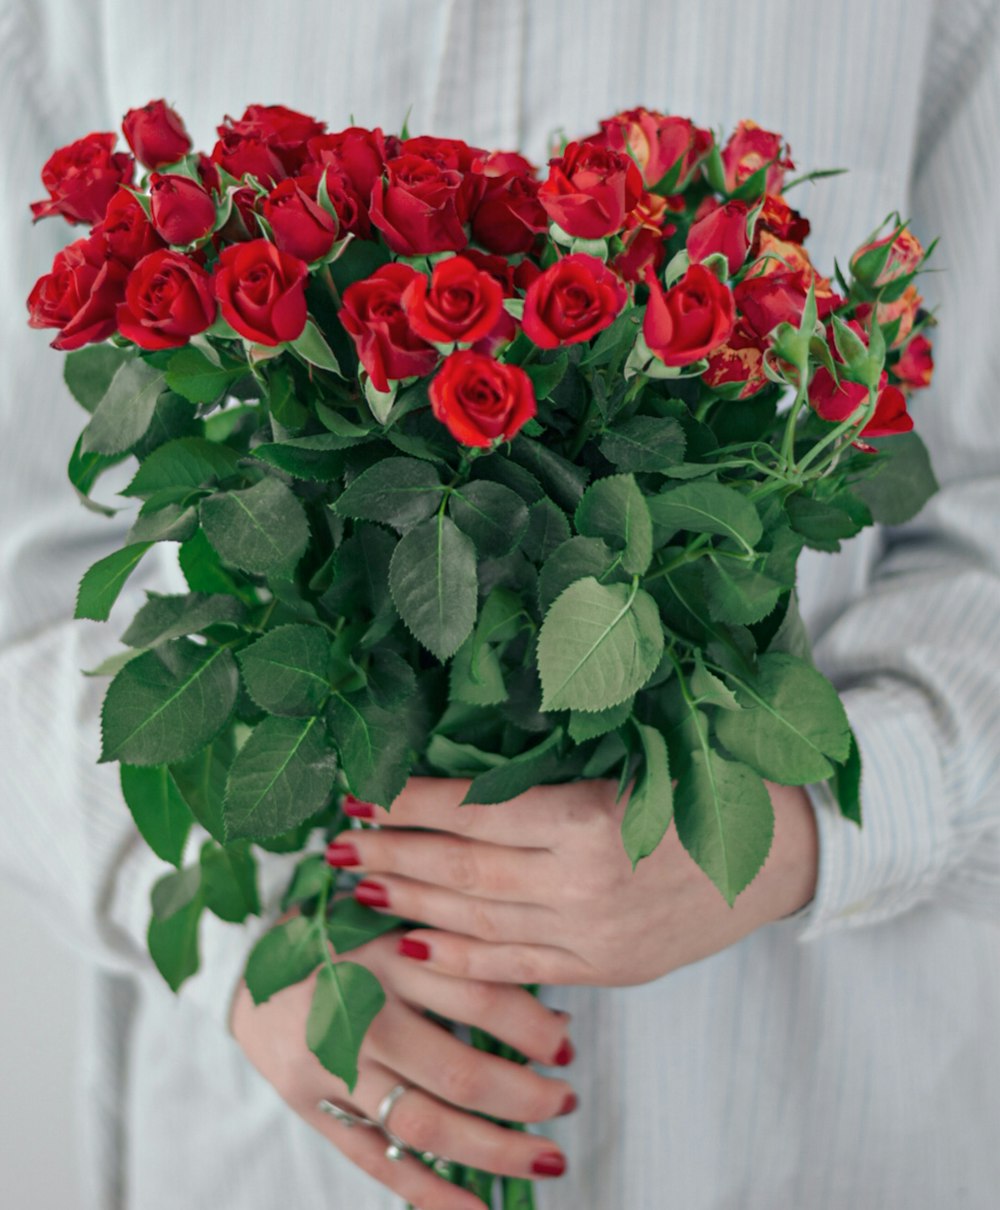 personne tenant un bouquet de roses rouges